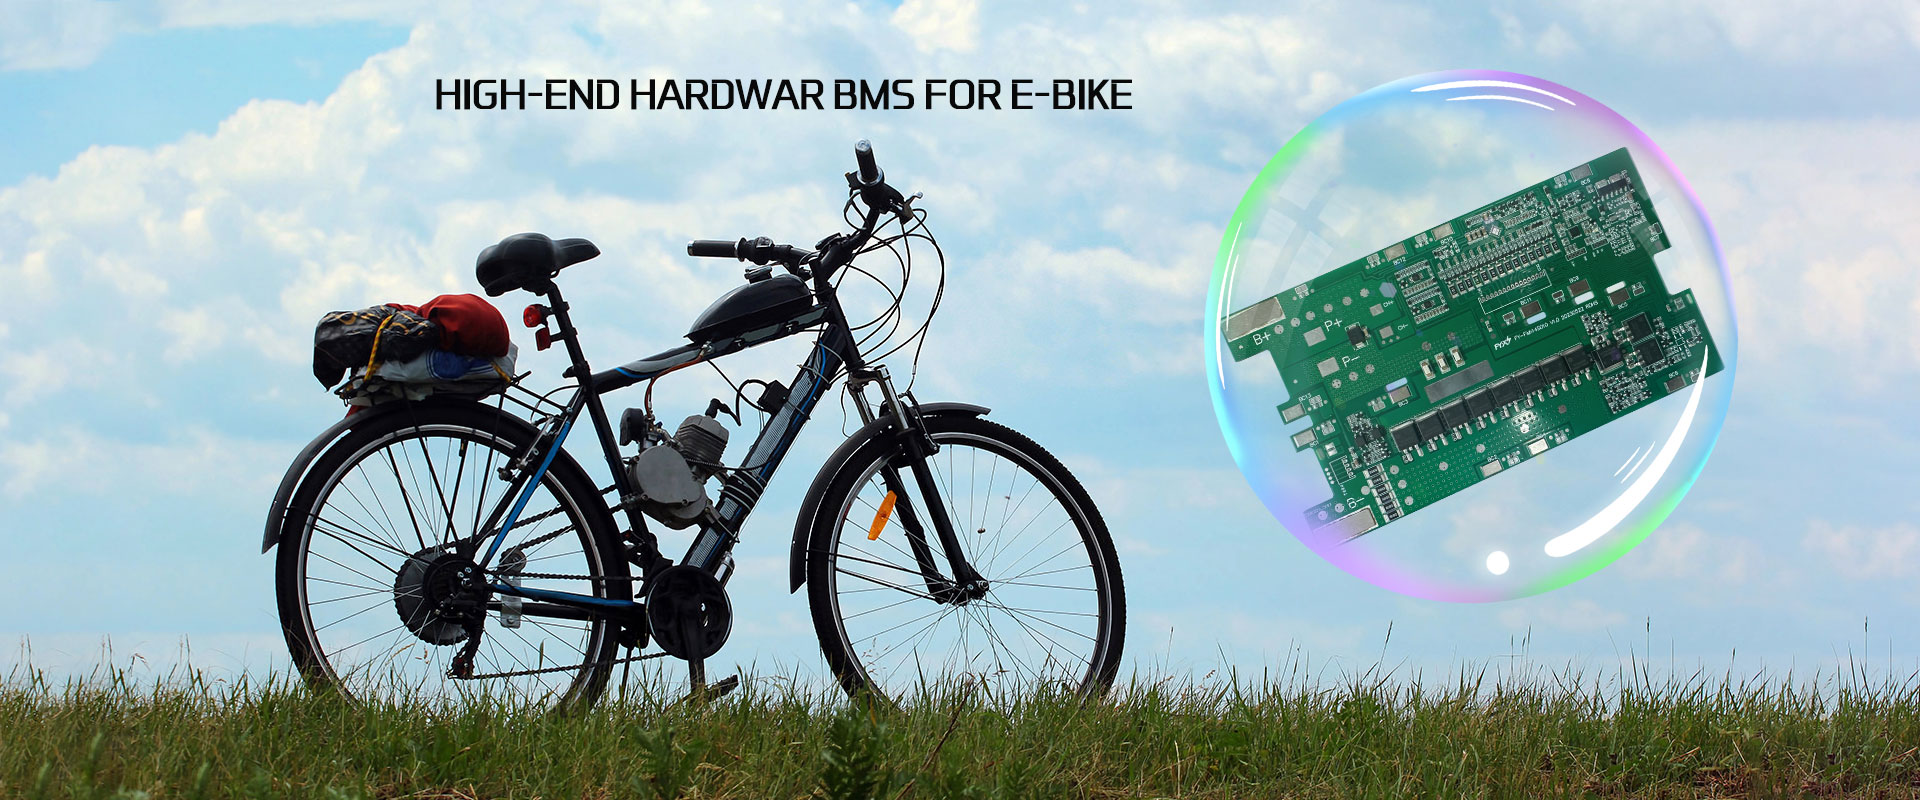 BMS pentru furnizorii de biciclete electrice